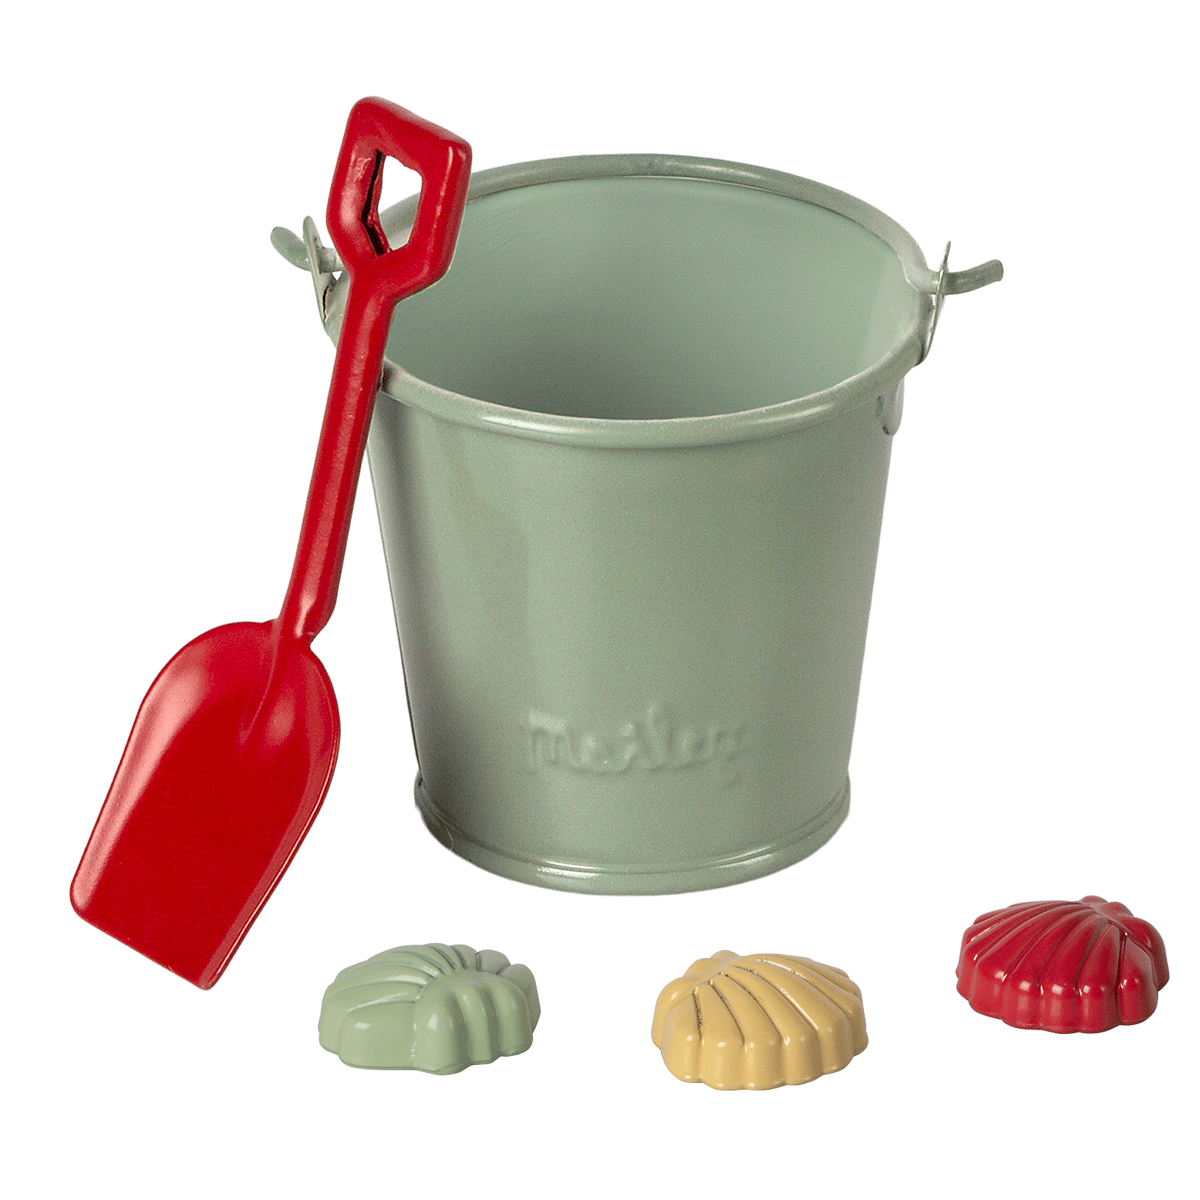 Maileg miniature dolls house Beach set - shovel bucket and shells